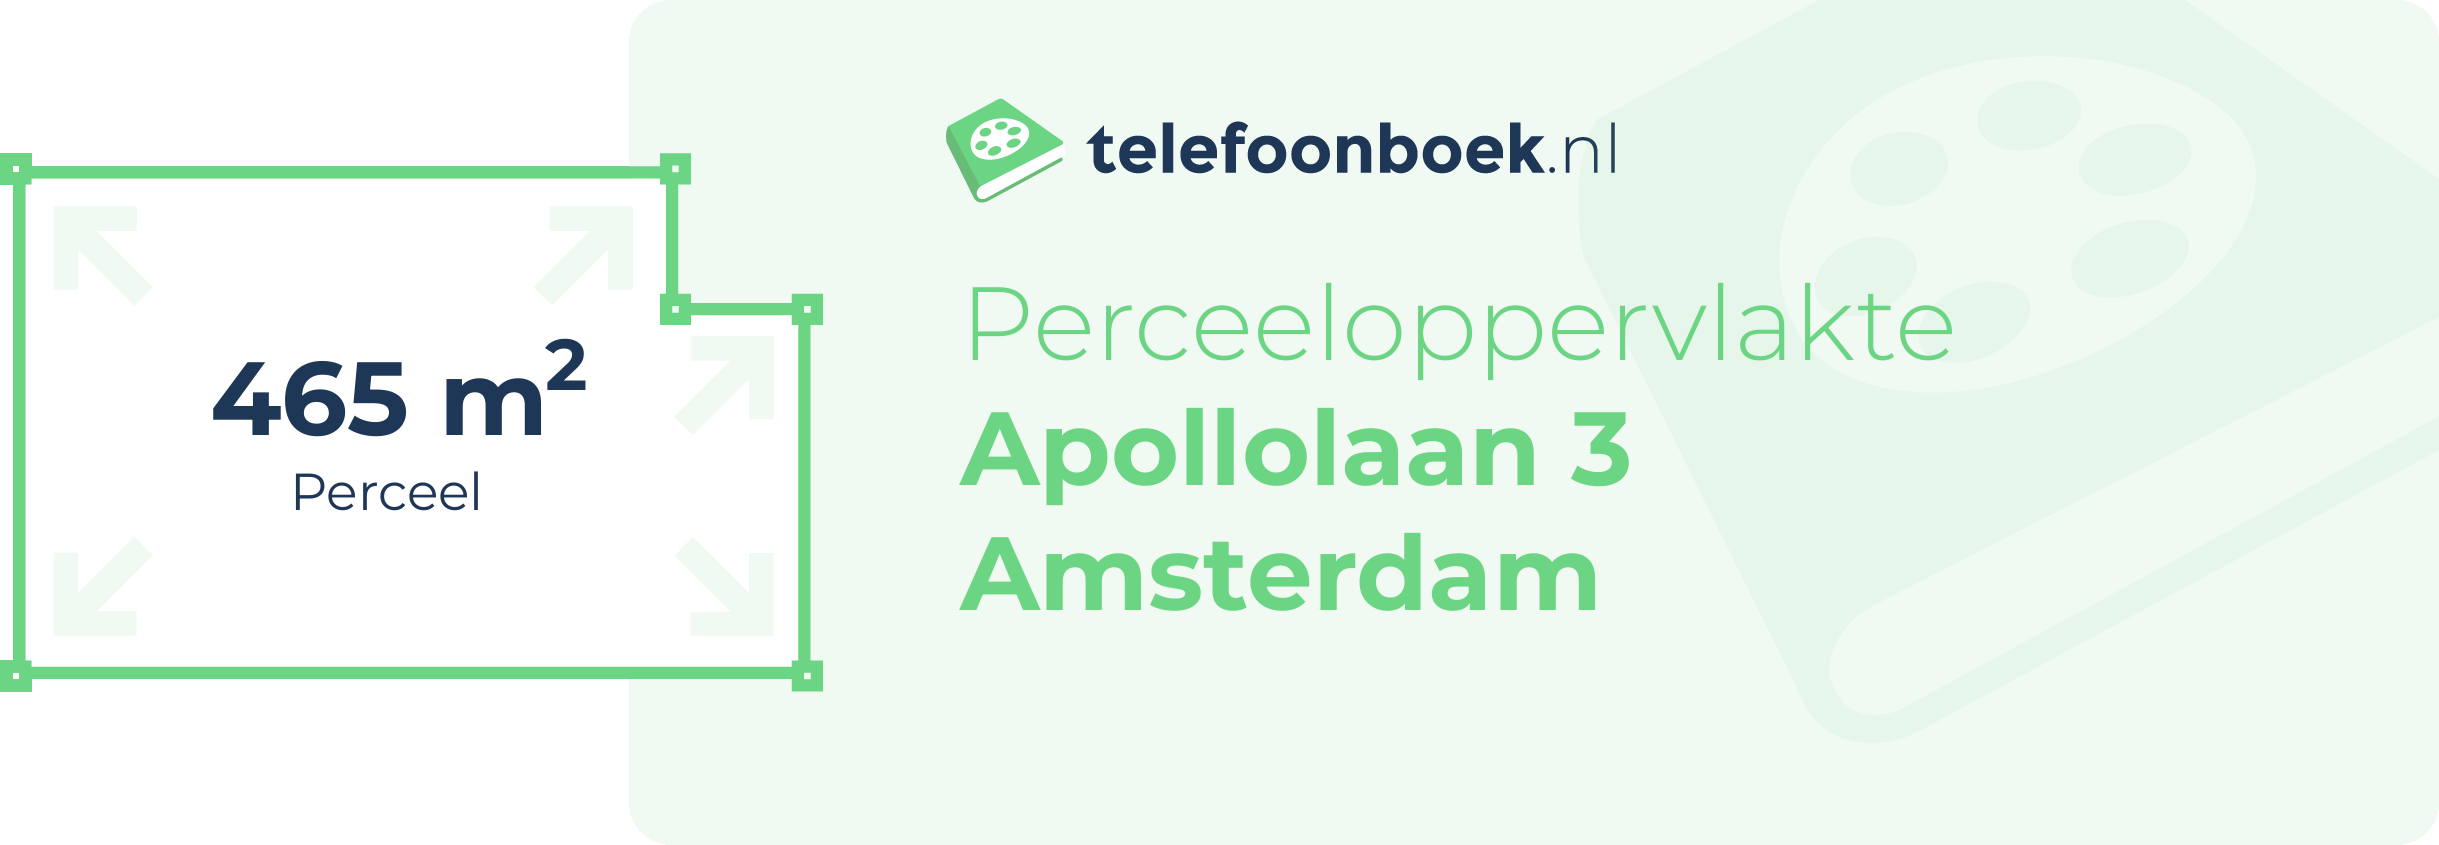 Perceeloppervlakte Apollolaan 3 Amsterdam